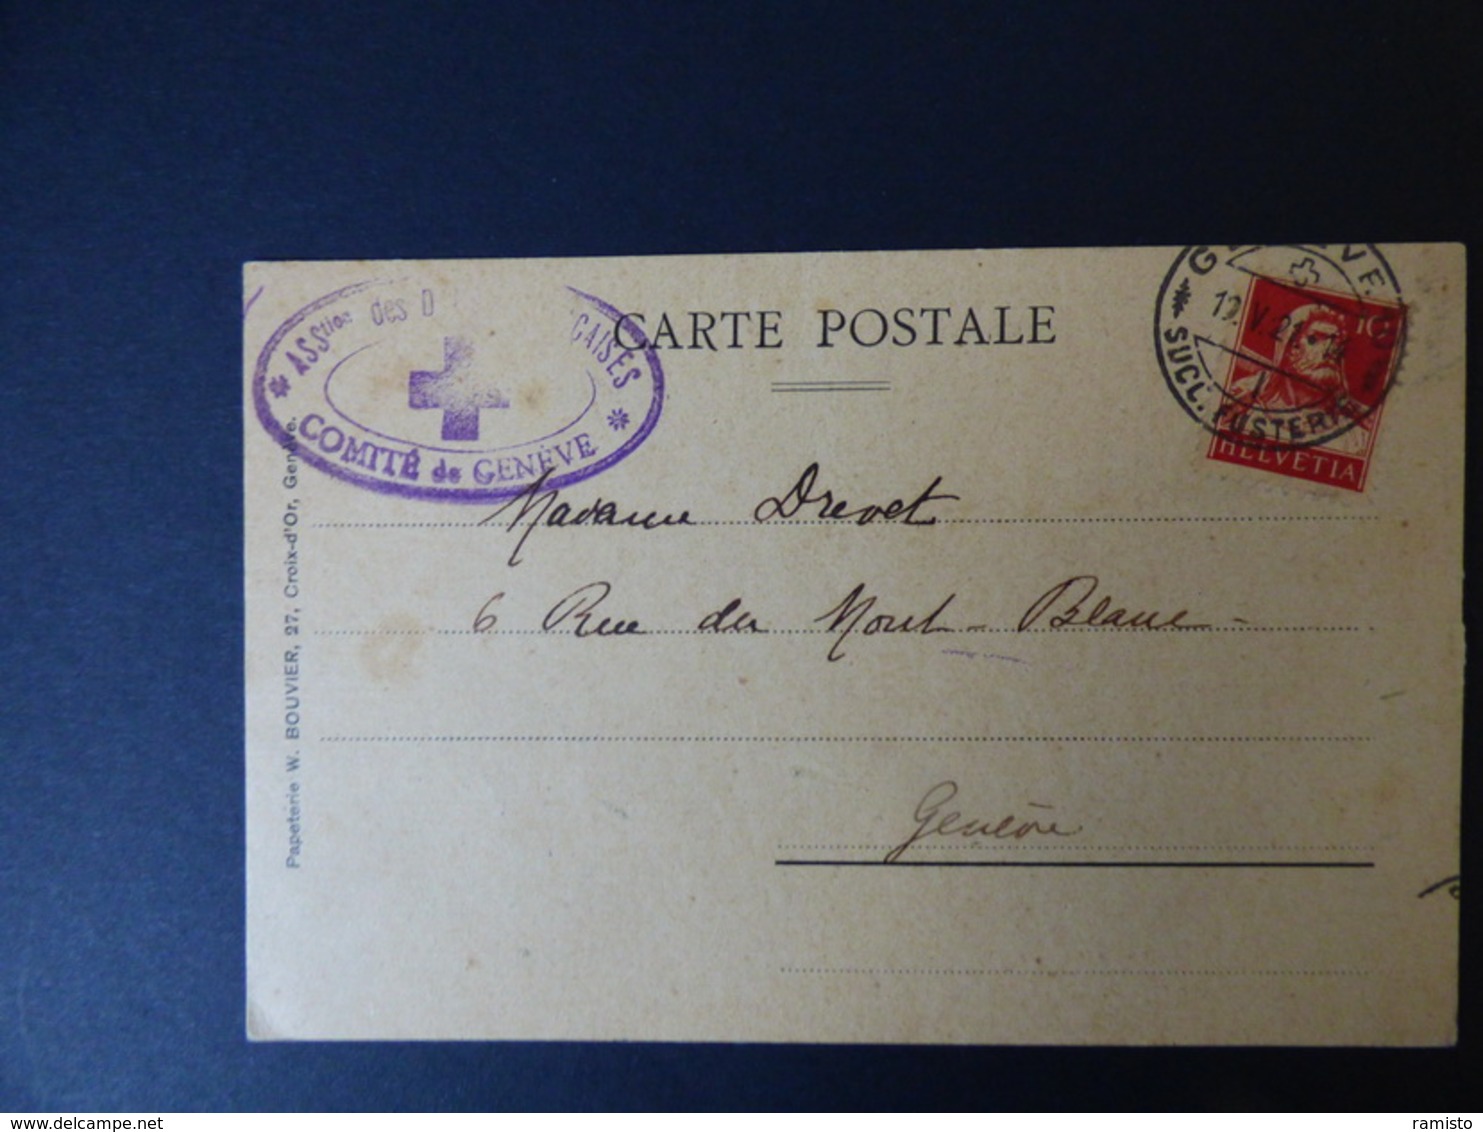 Lot de 230 lettres du XIXe / XXe siècle, forte cote : entiers postaux, recommandés, censures, premier vol,... Voir scans